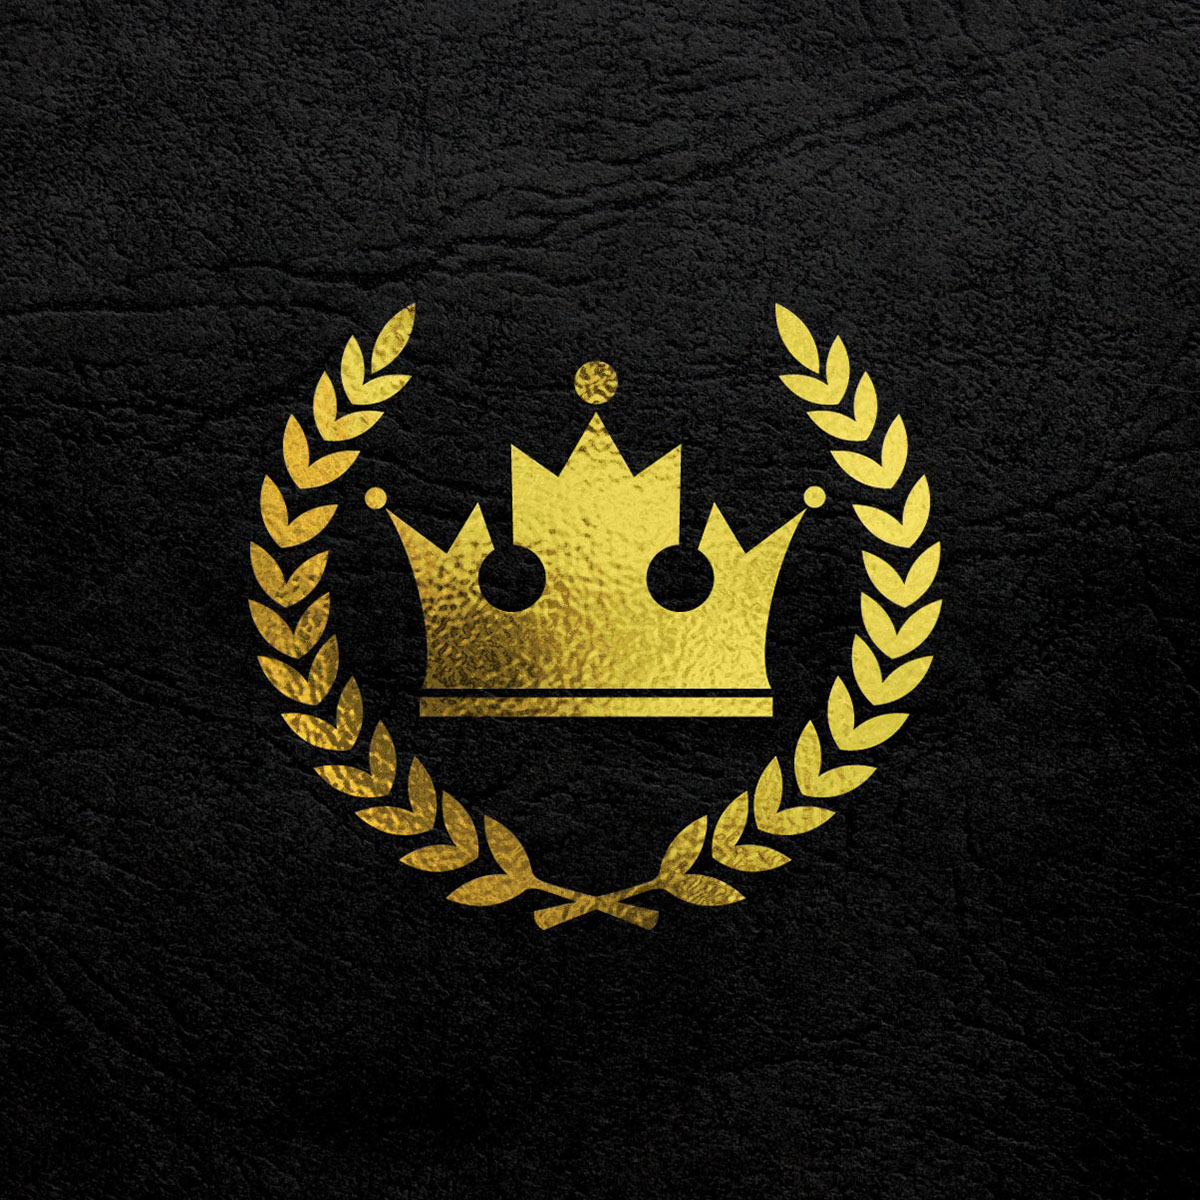 Gold Logo Background